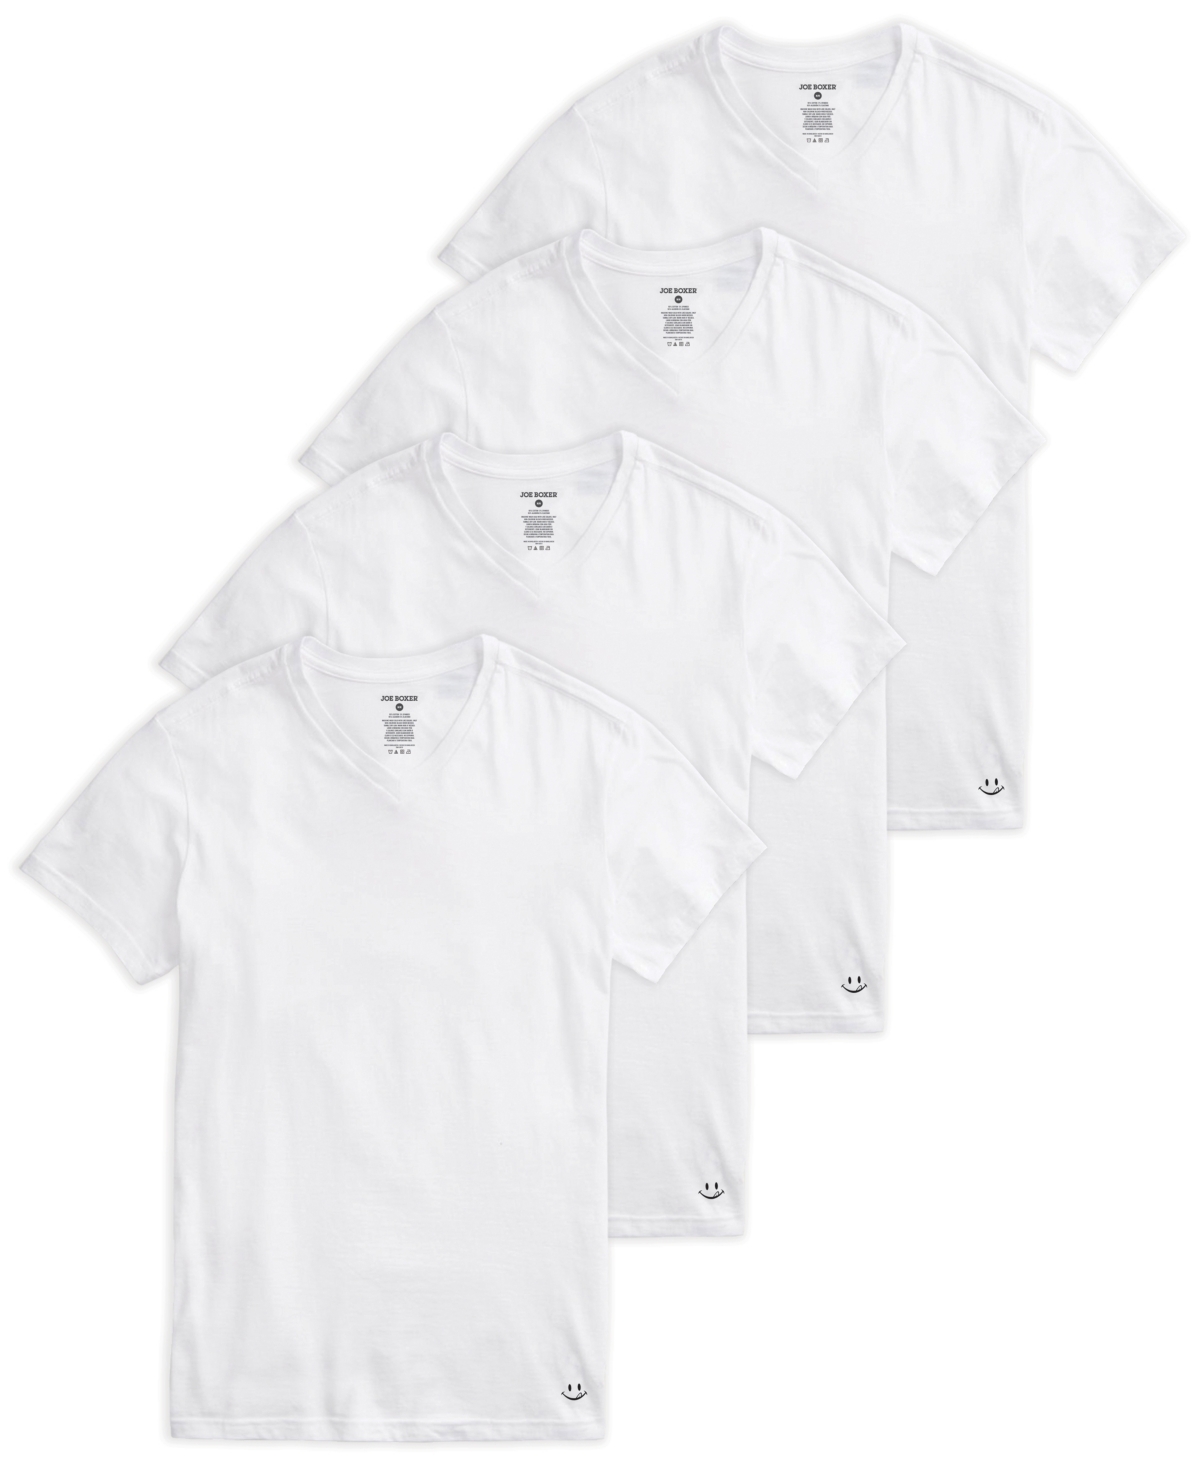 Joe Boxer Men's Crew Neck T-shirt, Pack Of 4 In White